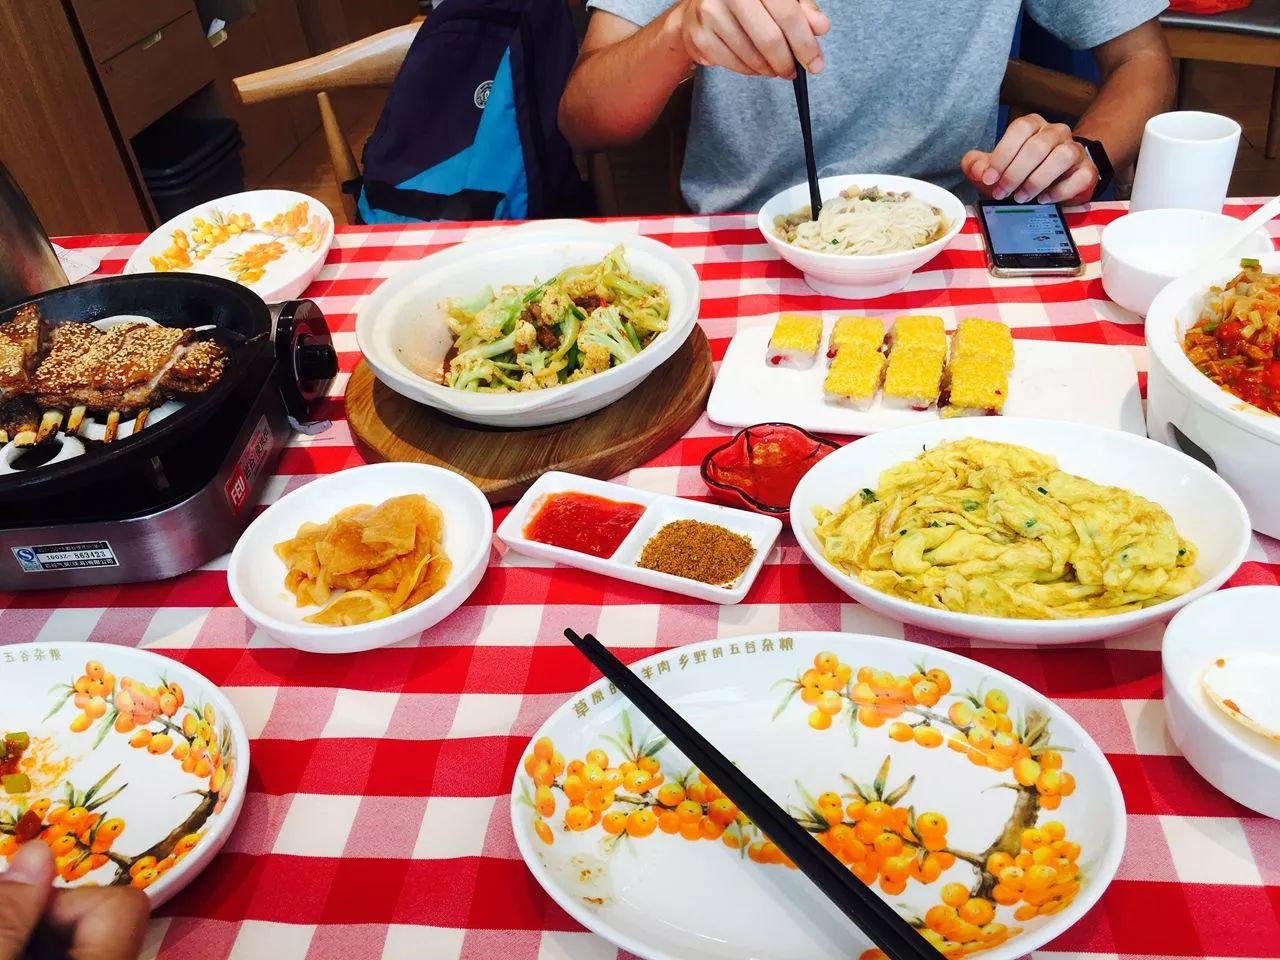 搜罗 在惠州找到的9种家乡菜,每样都是熟悉的味道